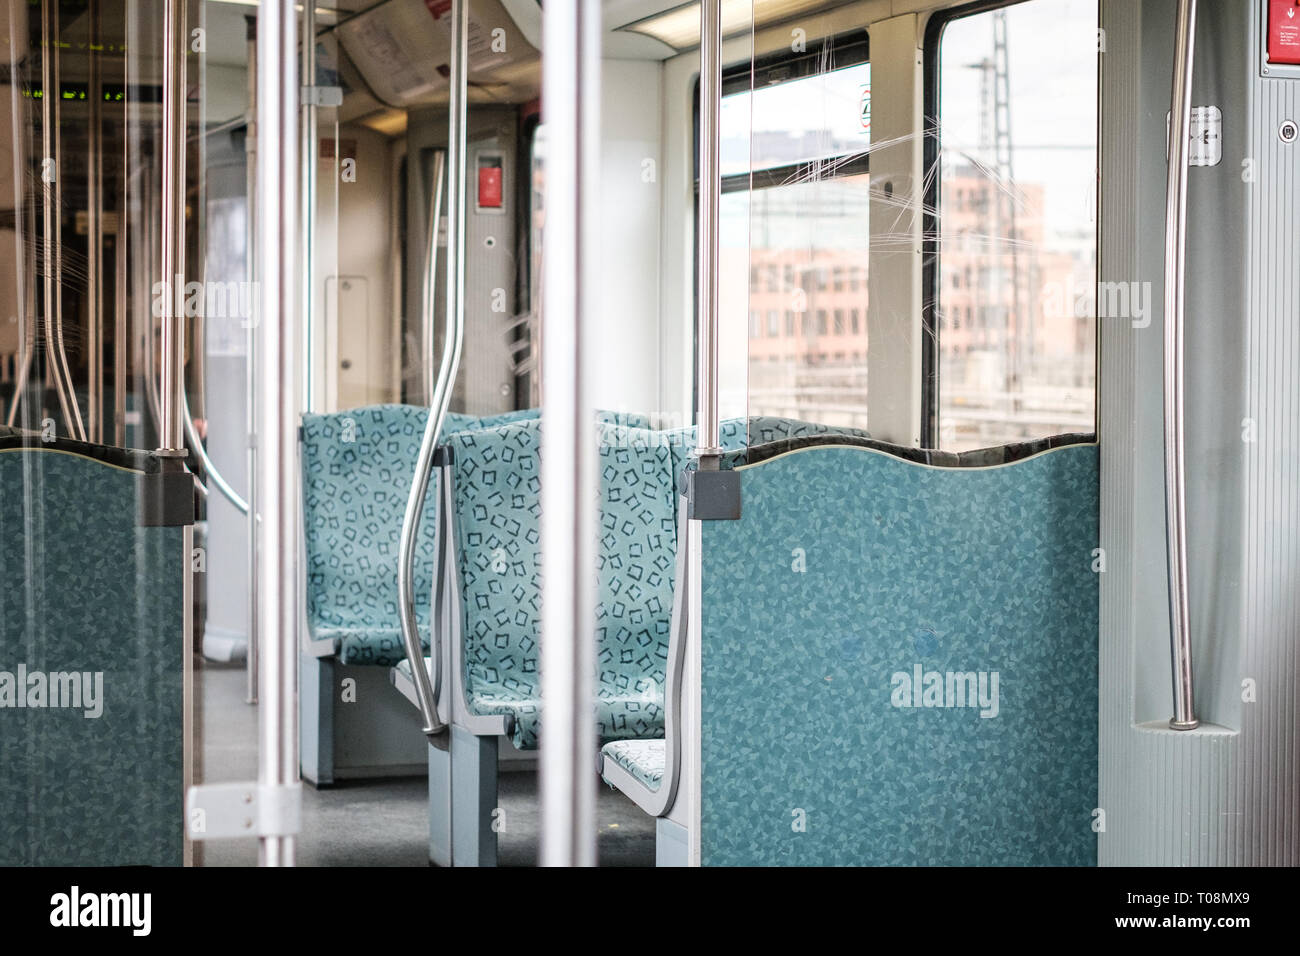 Berlin, Germany - march 2019: Inside S-Bahn train in Berlin, Germany Stock Photo